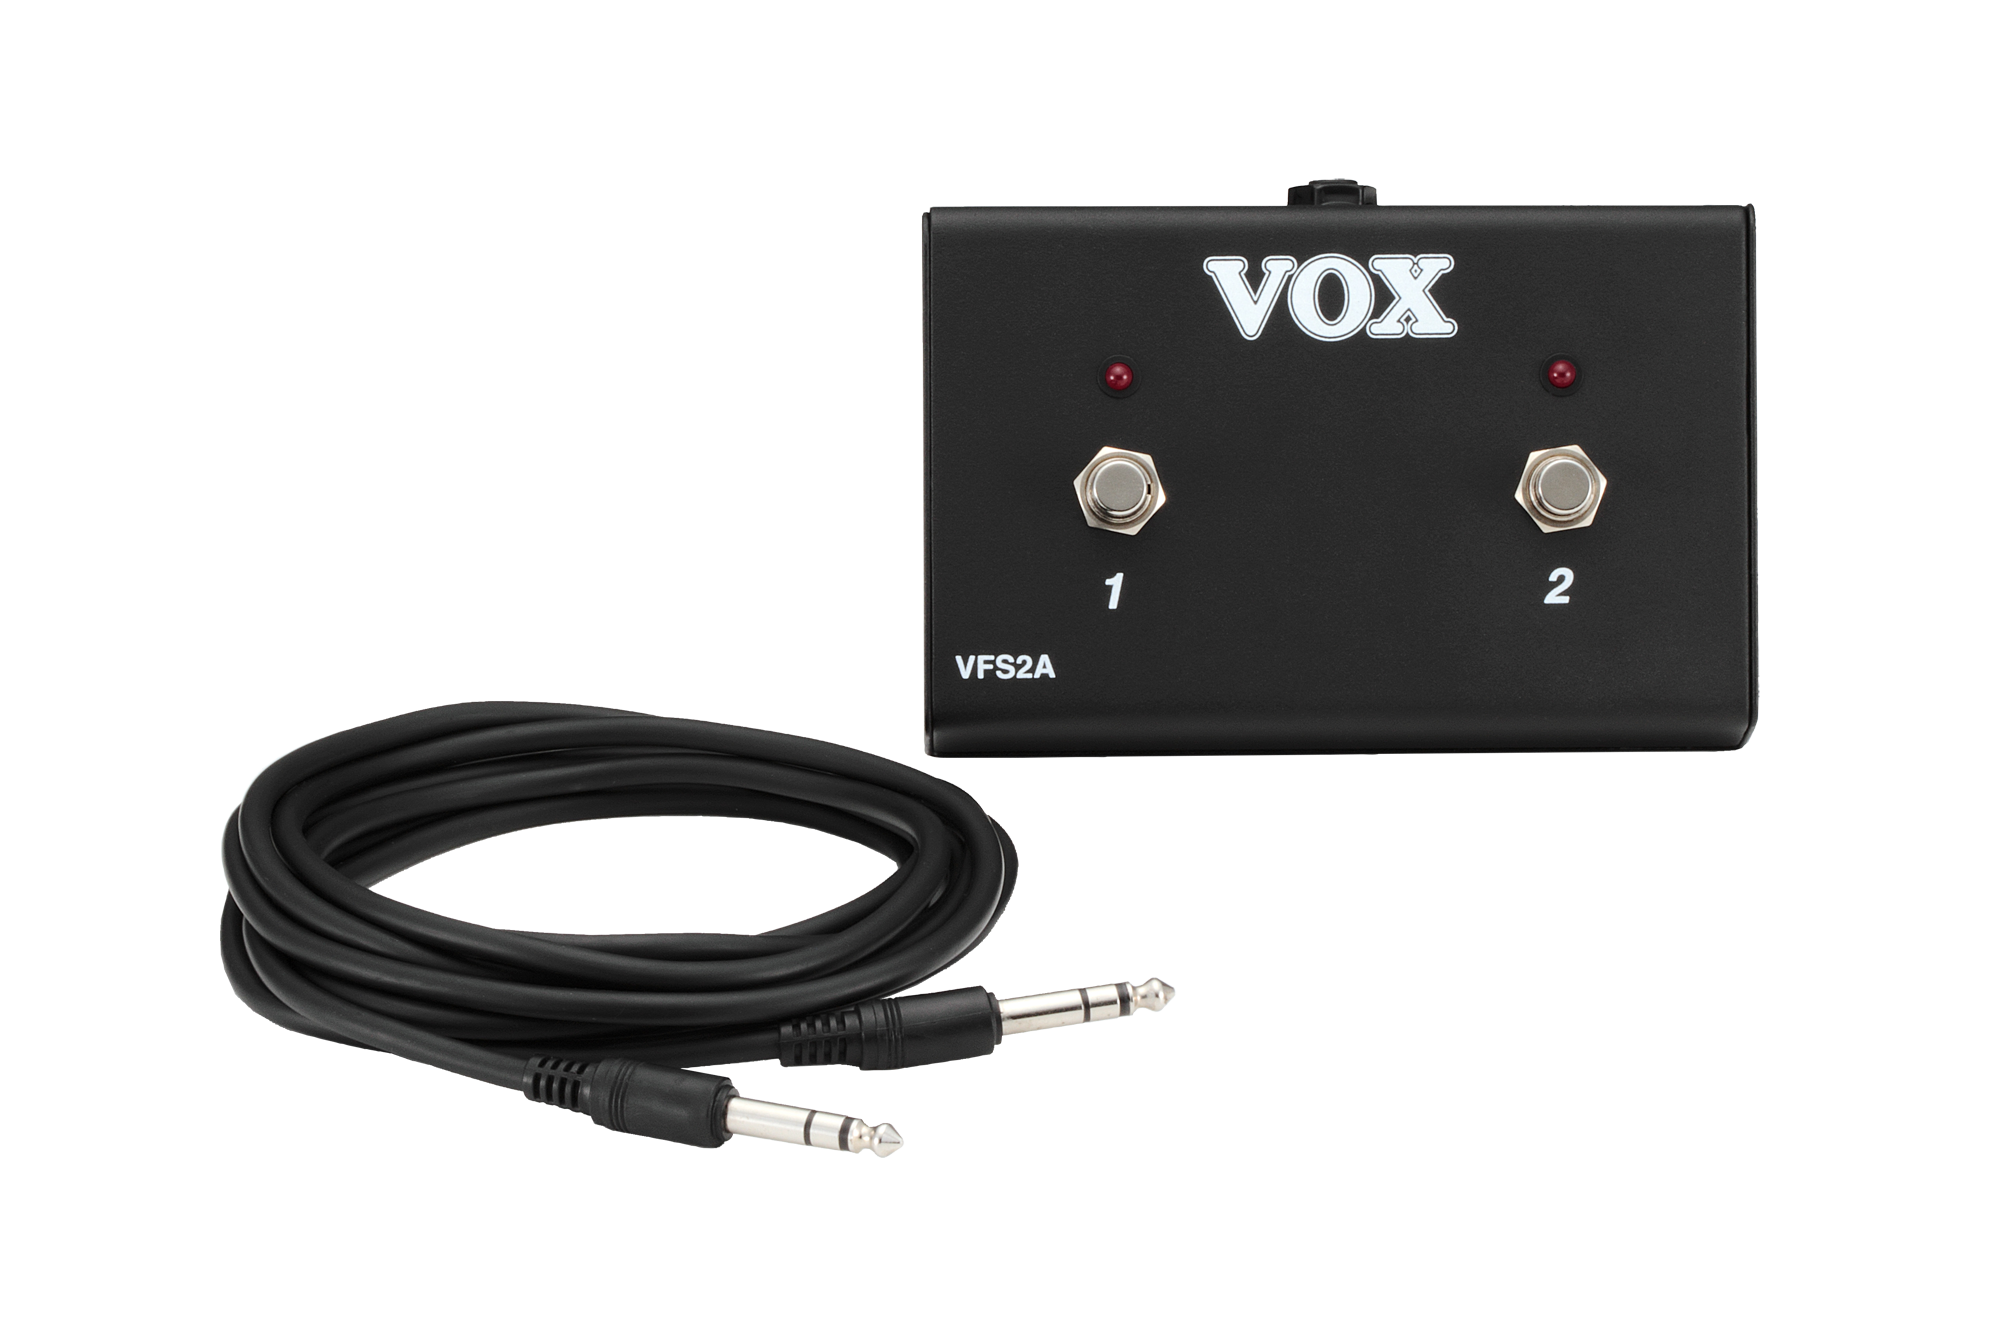 Vox VFS2A Fußschalter